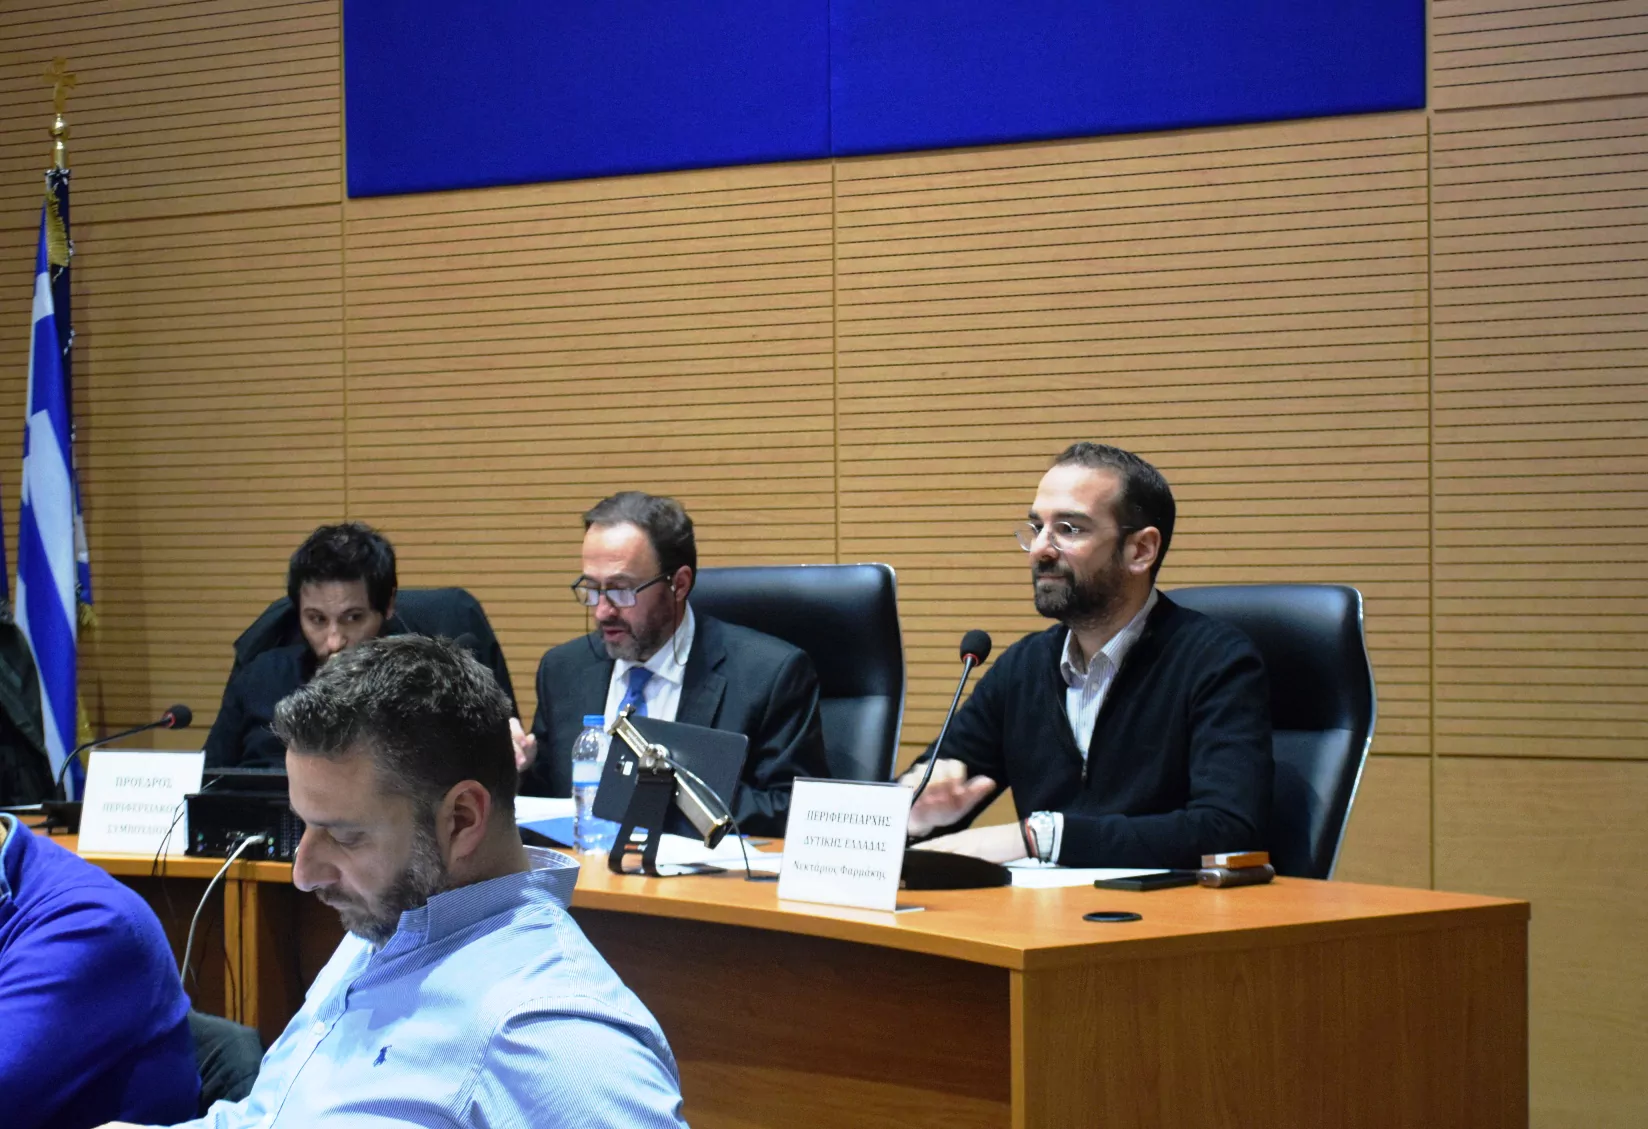 Περιφερειακό Συμβούλιο Δυτικής Ελλάδας: Εκλογή εκπροσώπων στη Γ.Σ. της ΕΝΠΕ και μελών της Επιτροπής Περιβάλλοντος